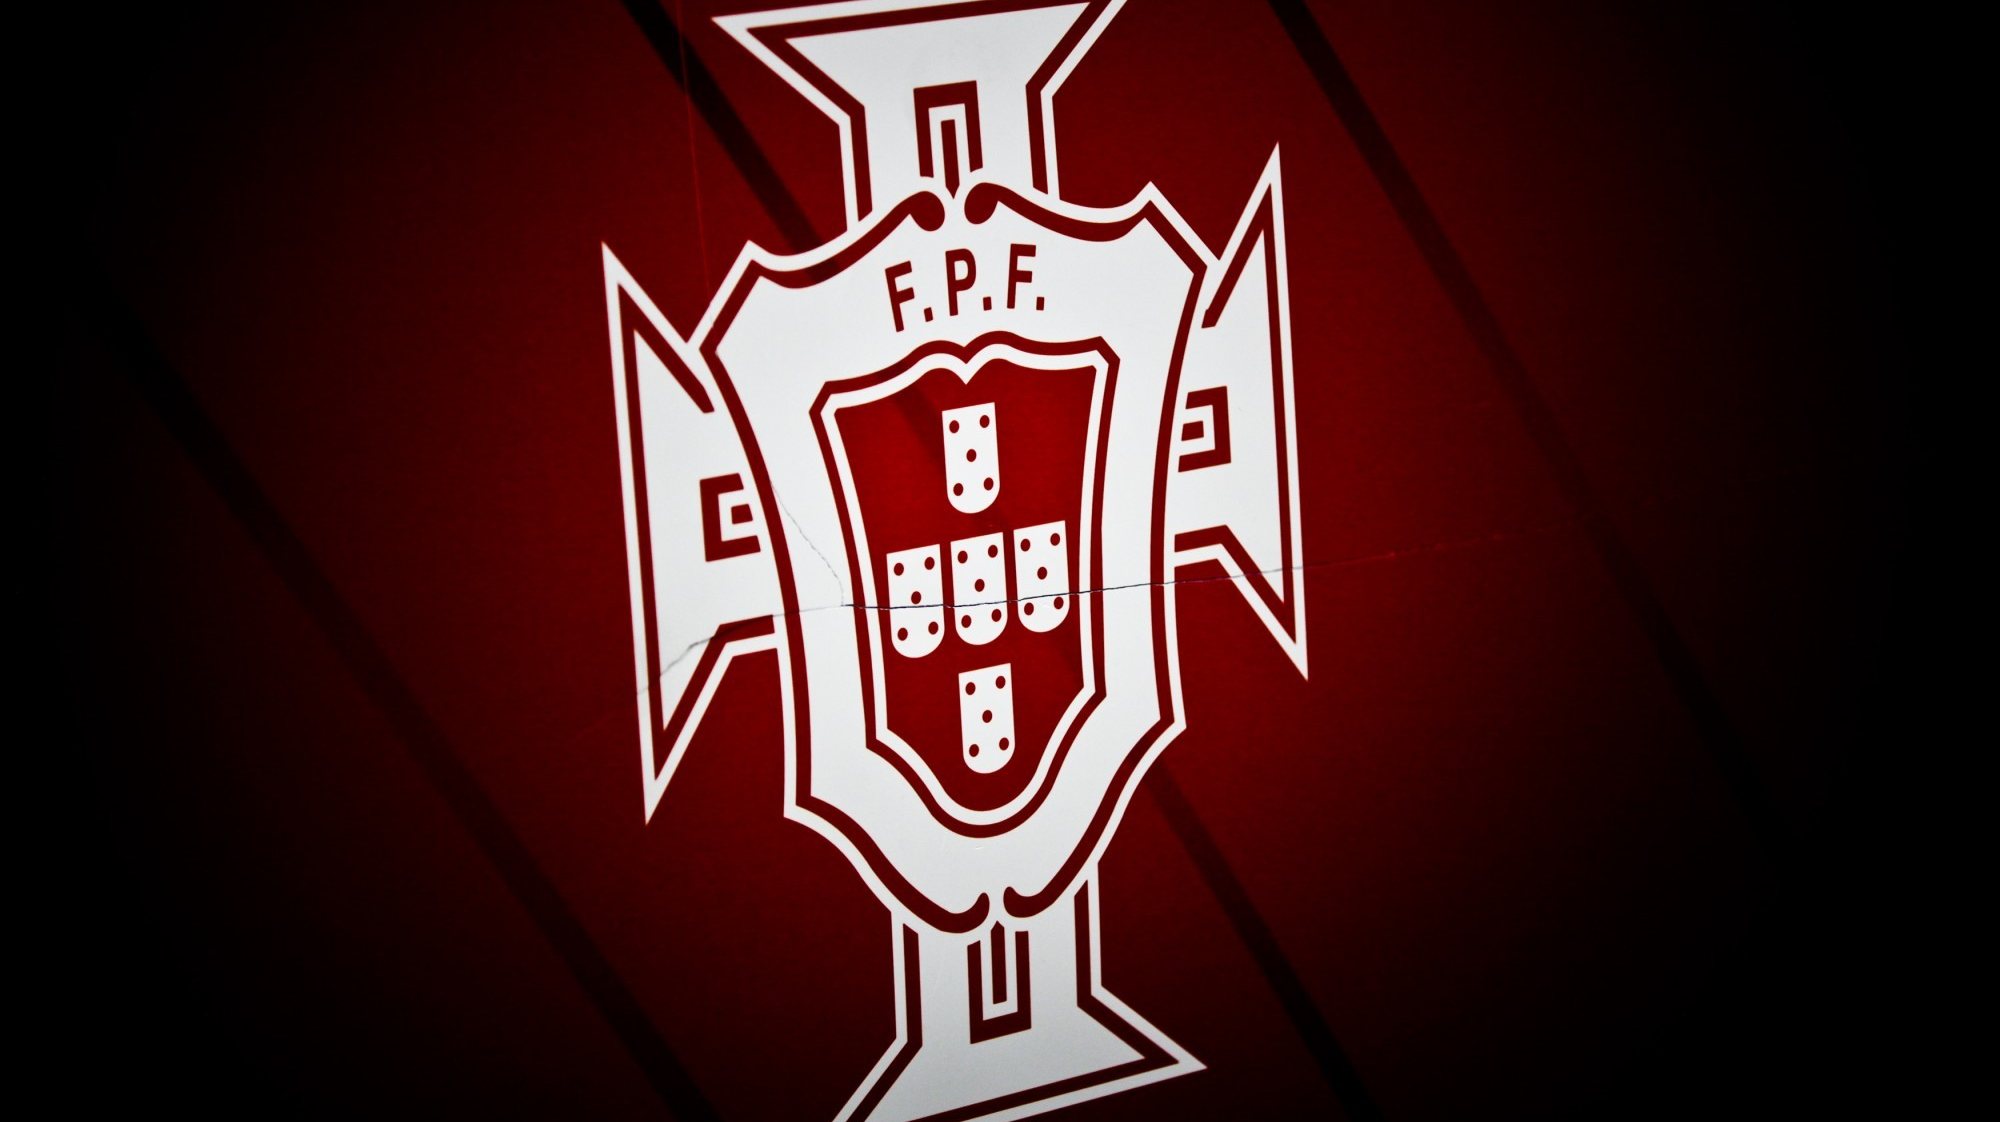 Logotipo da Federação Portuguesa de Futebol